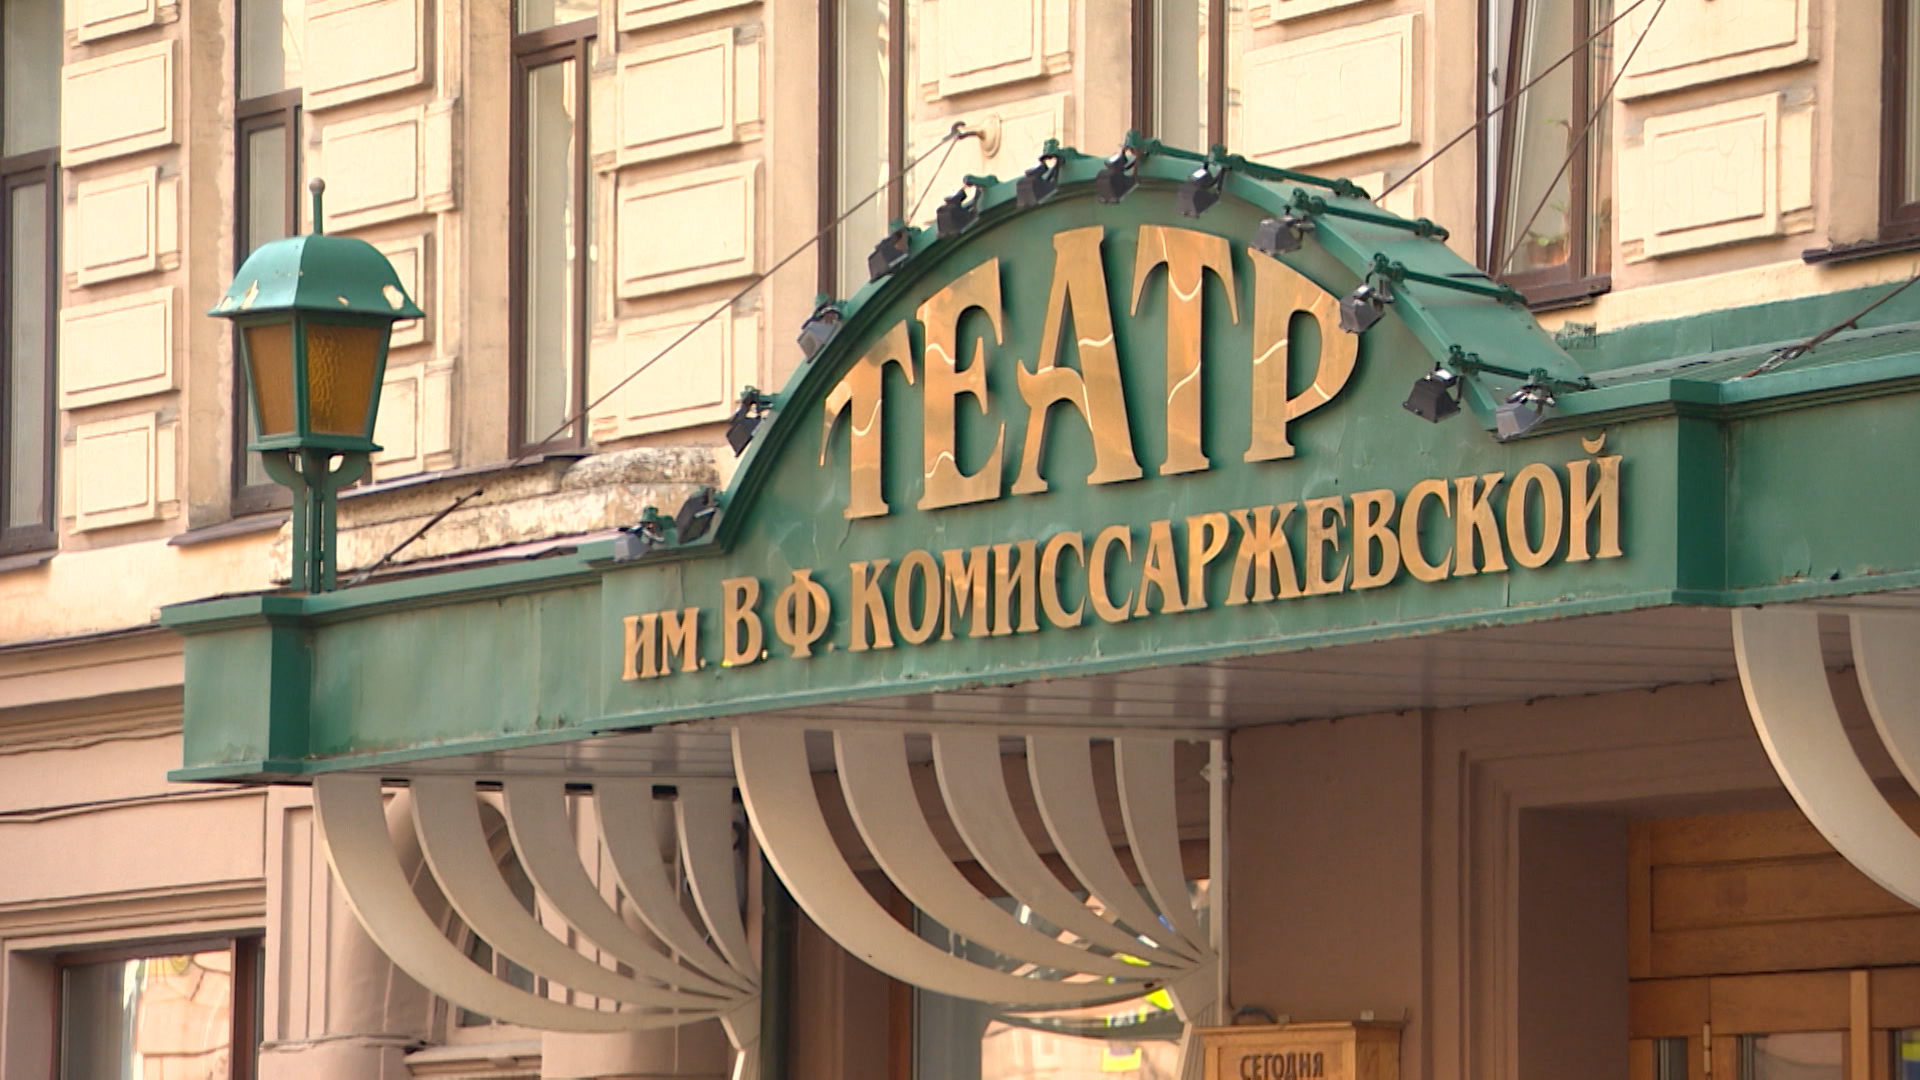 Театр комиссаржевской санкт петербург актеры фото и имена